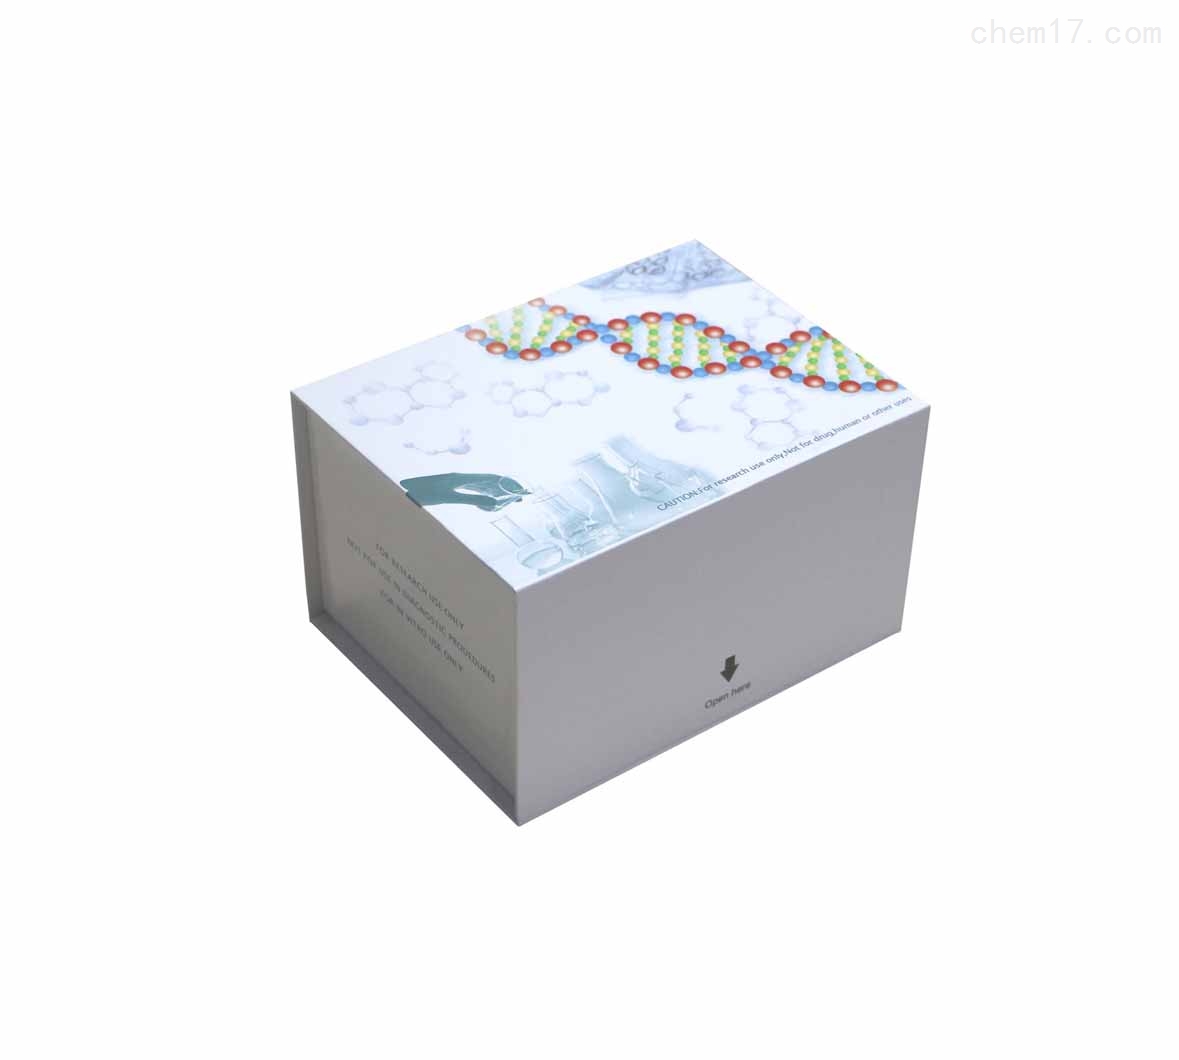 大鼠抗双链DNA抗体/天然DNA抗体(dsDNA)ELISA试剂盒